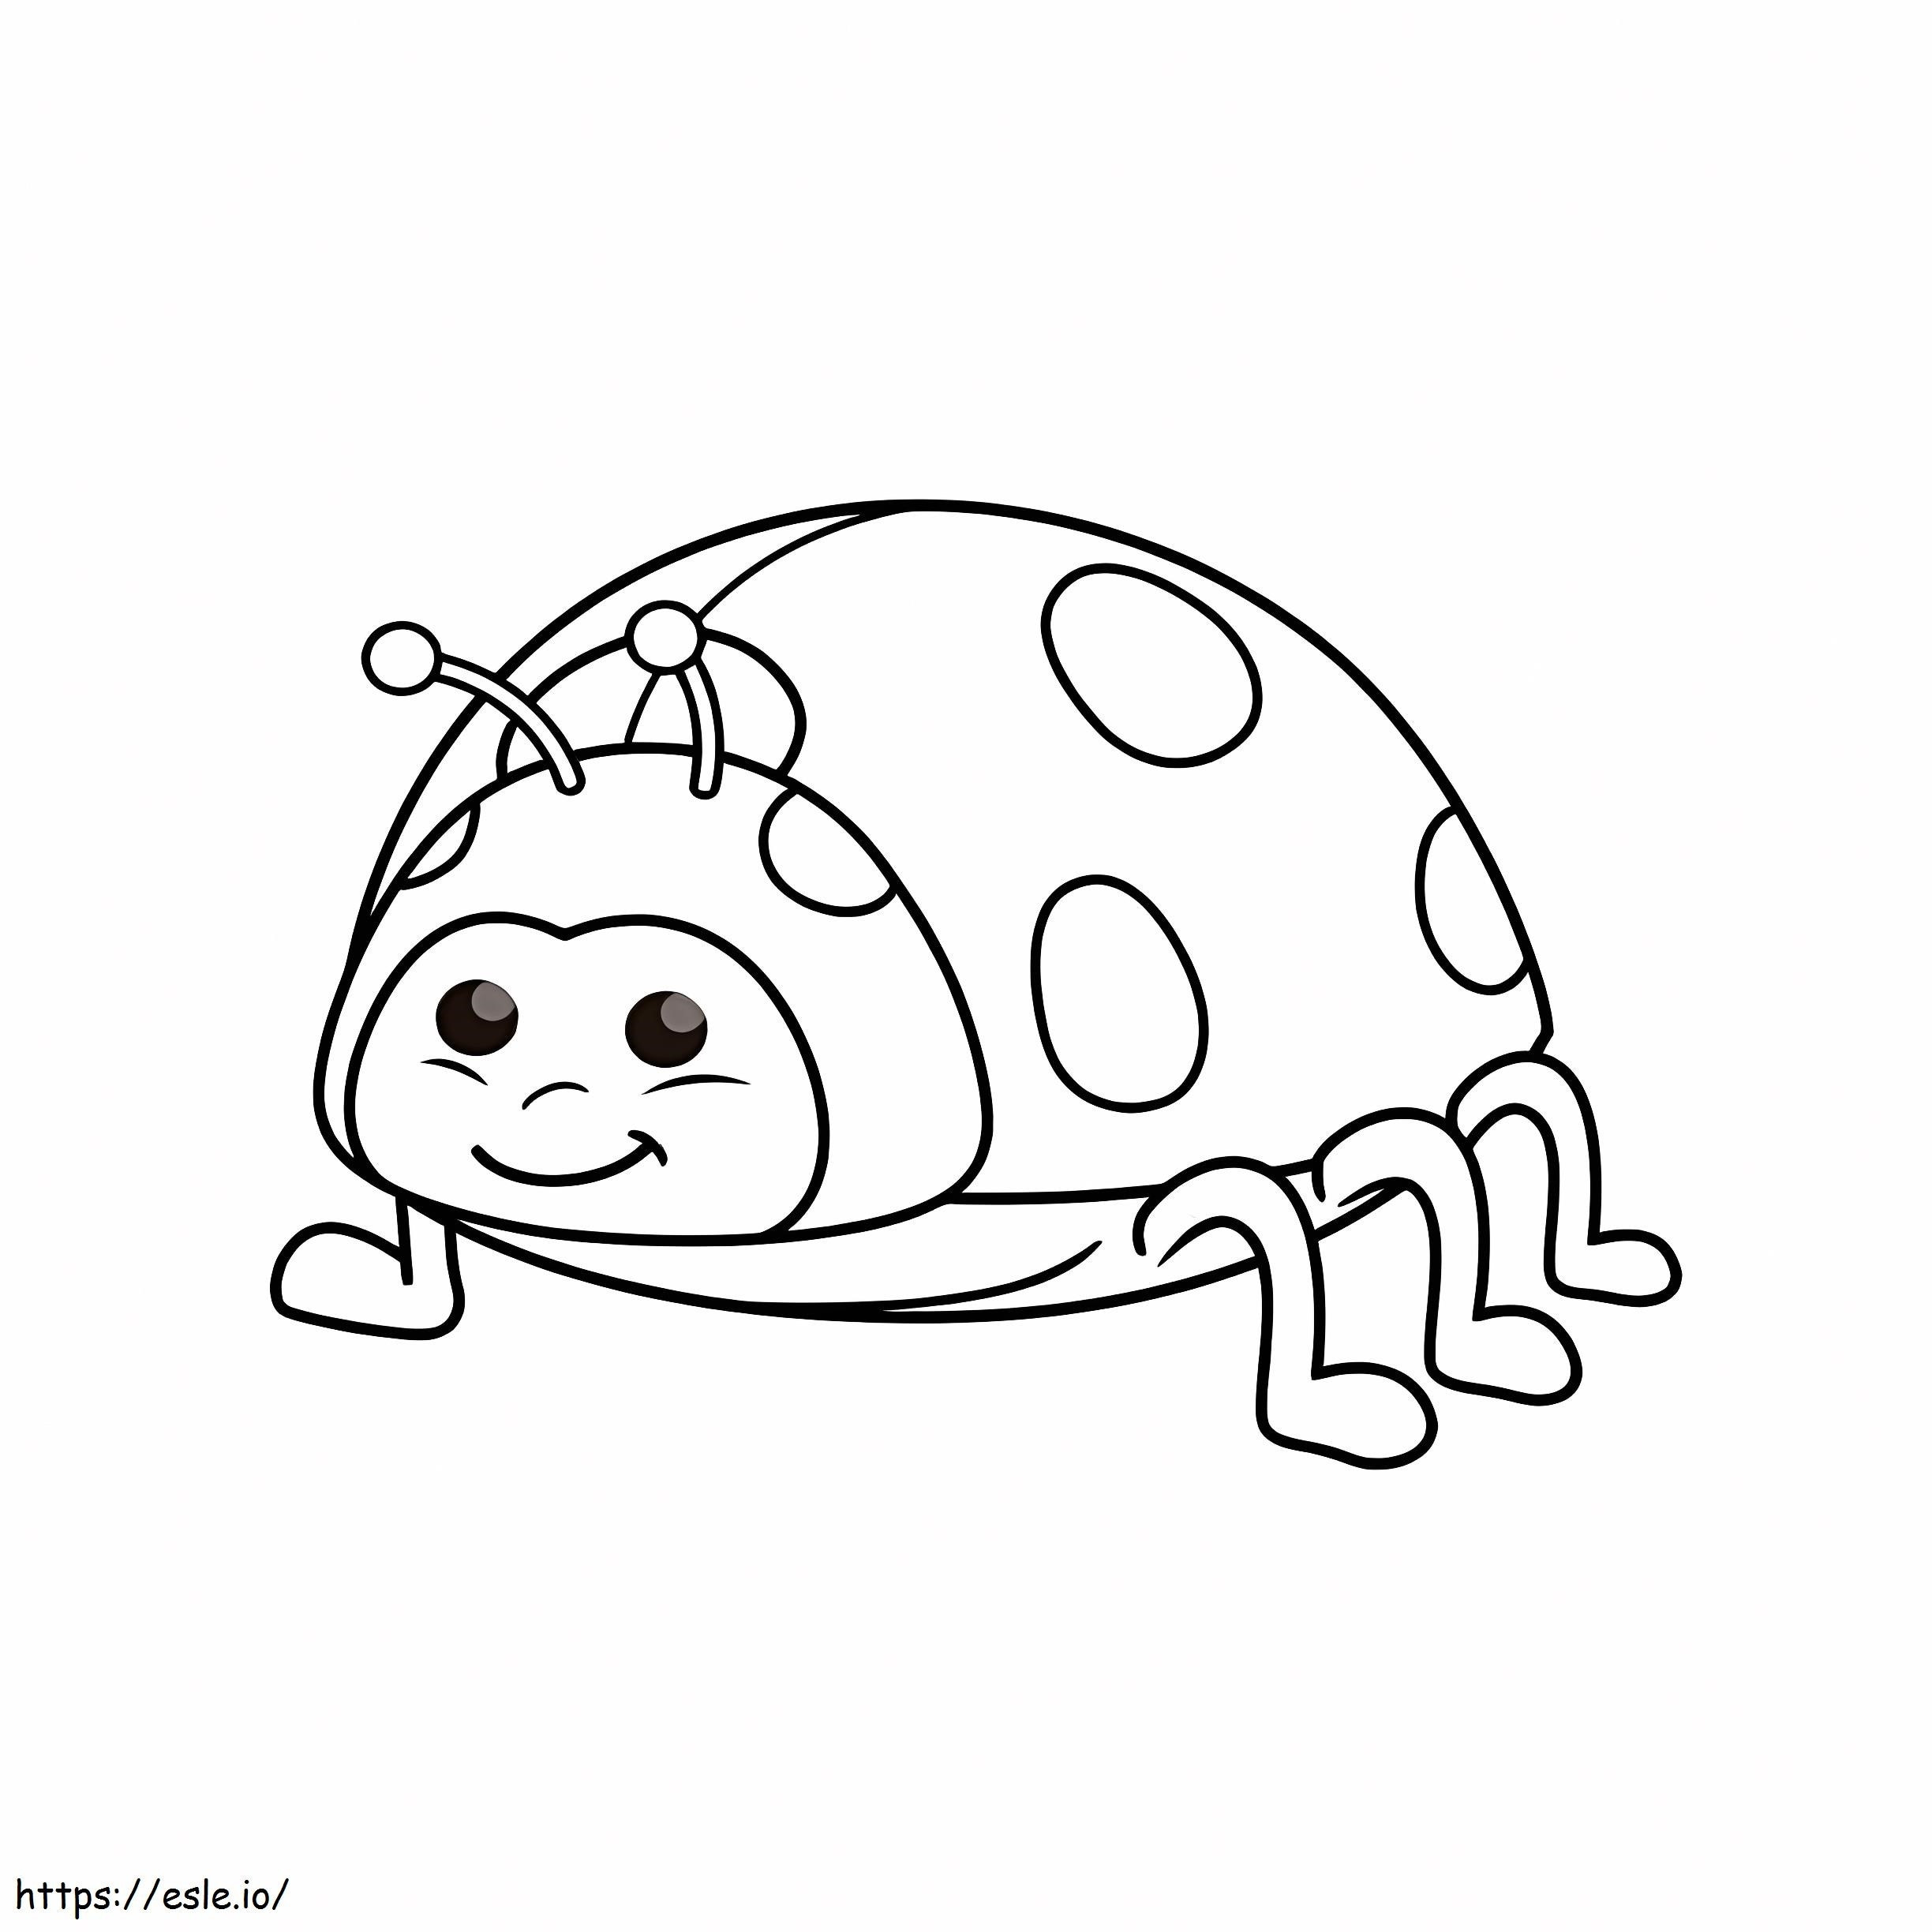 Kawaii Ladybug Smiling coloring page